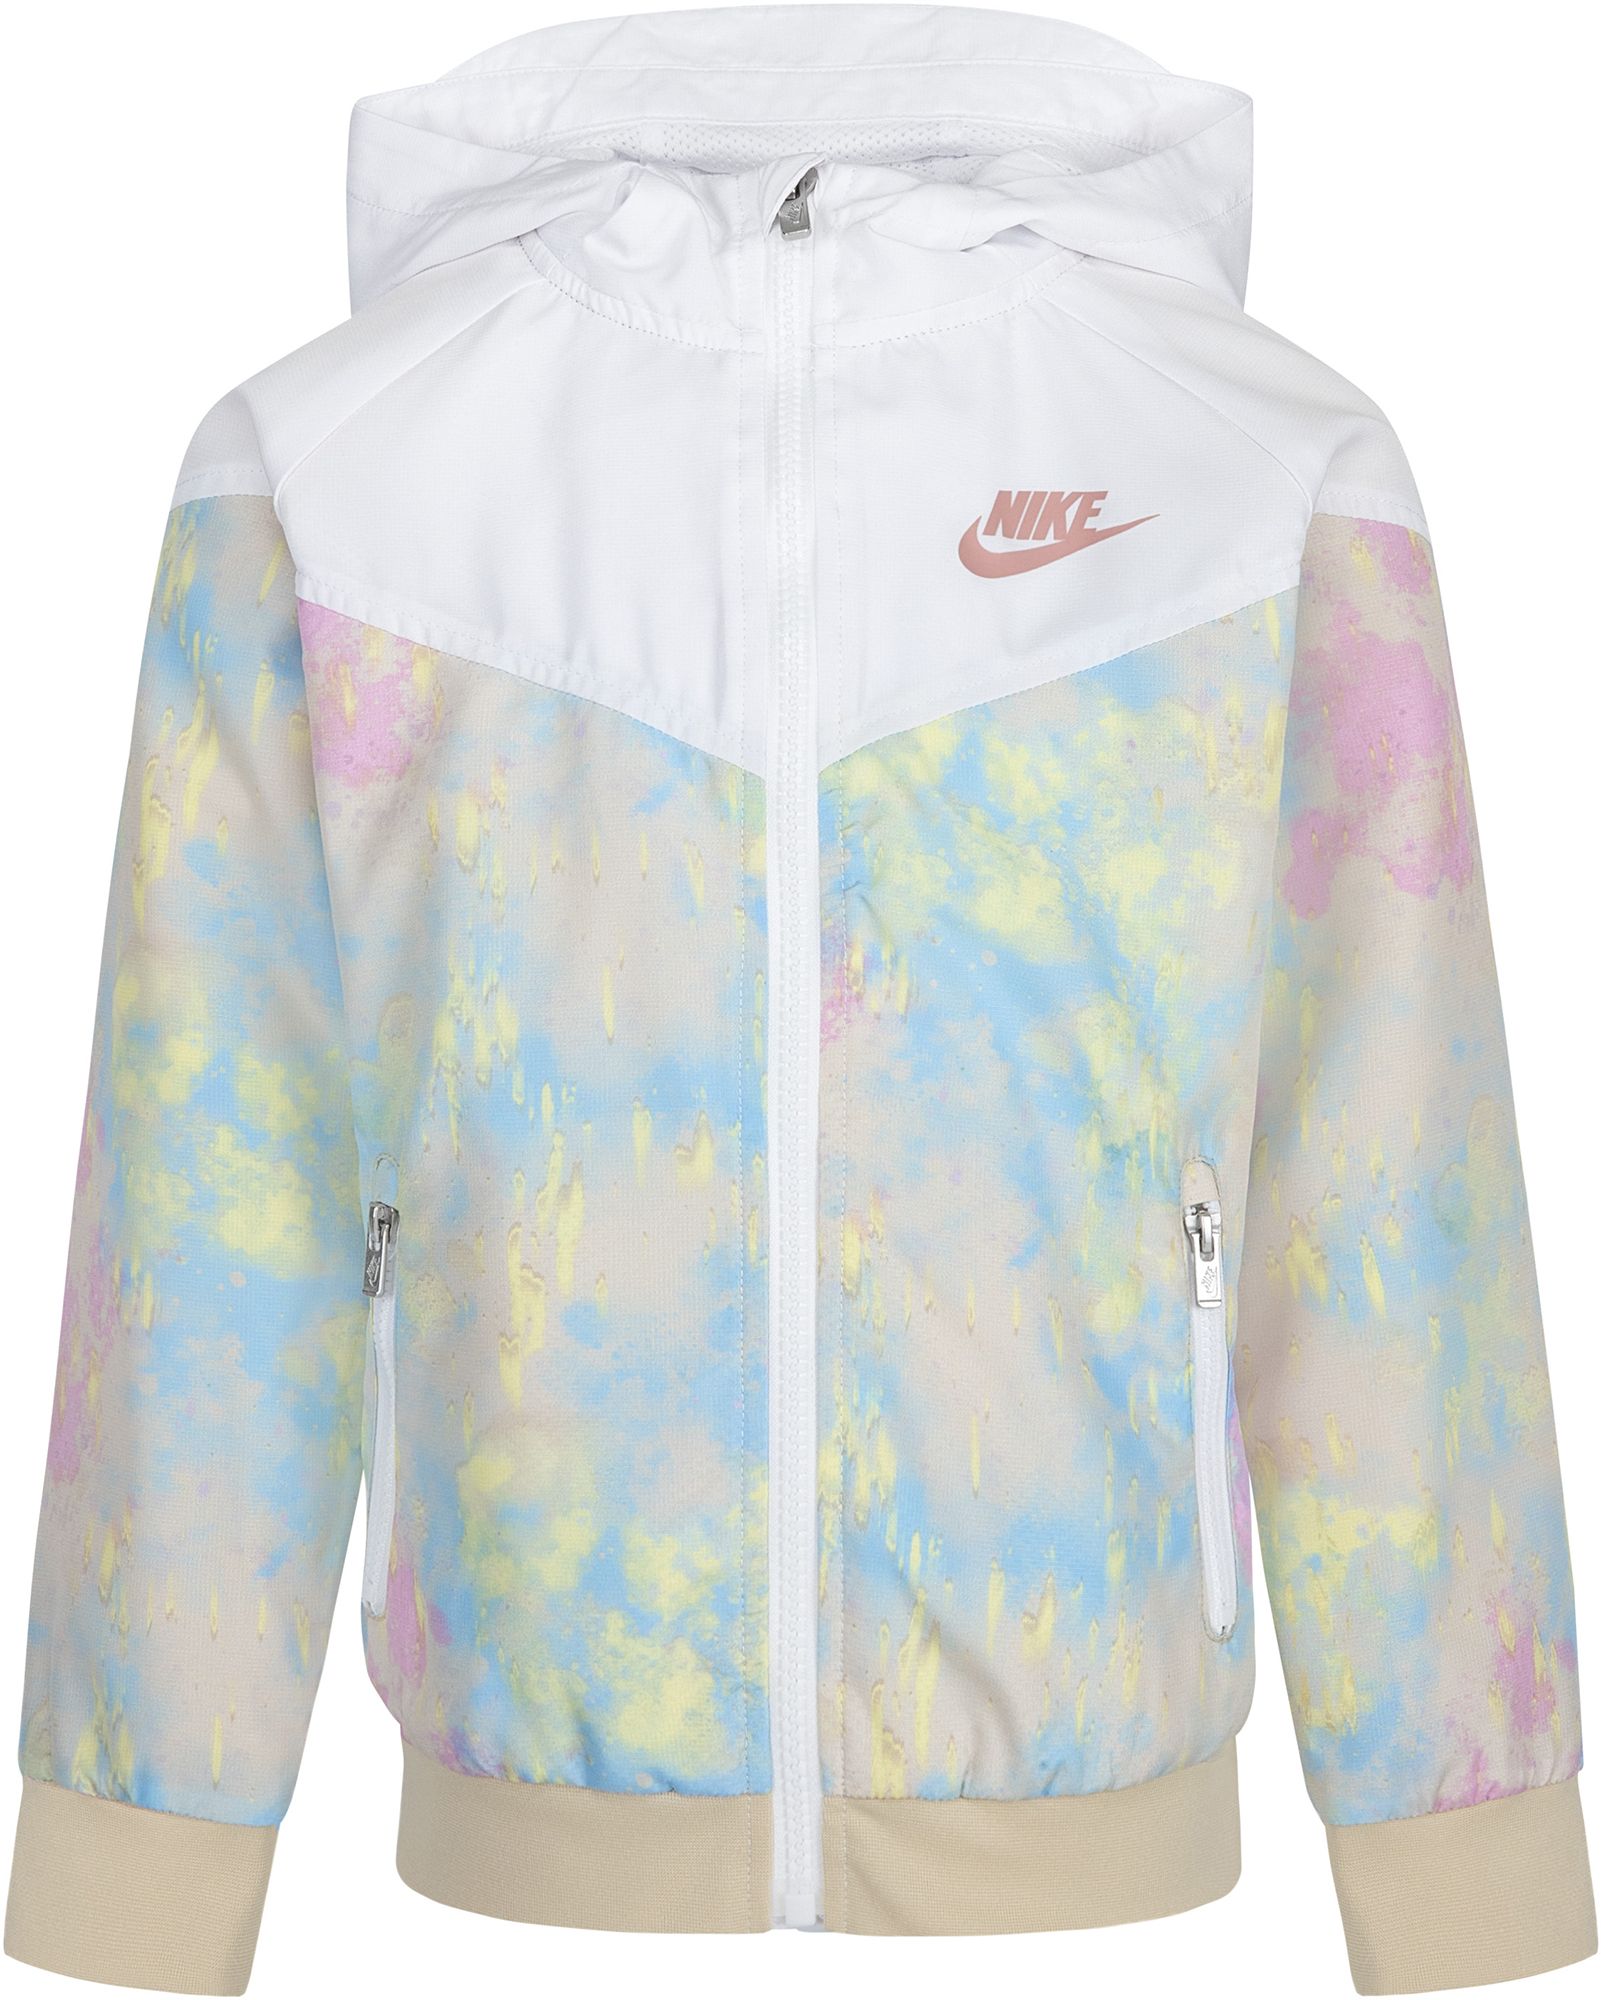 Nike Little Girls' Printed Windrunner Jacket